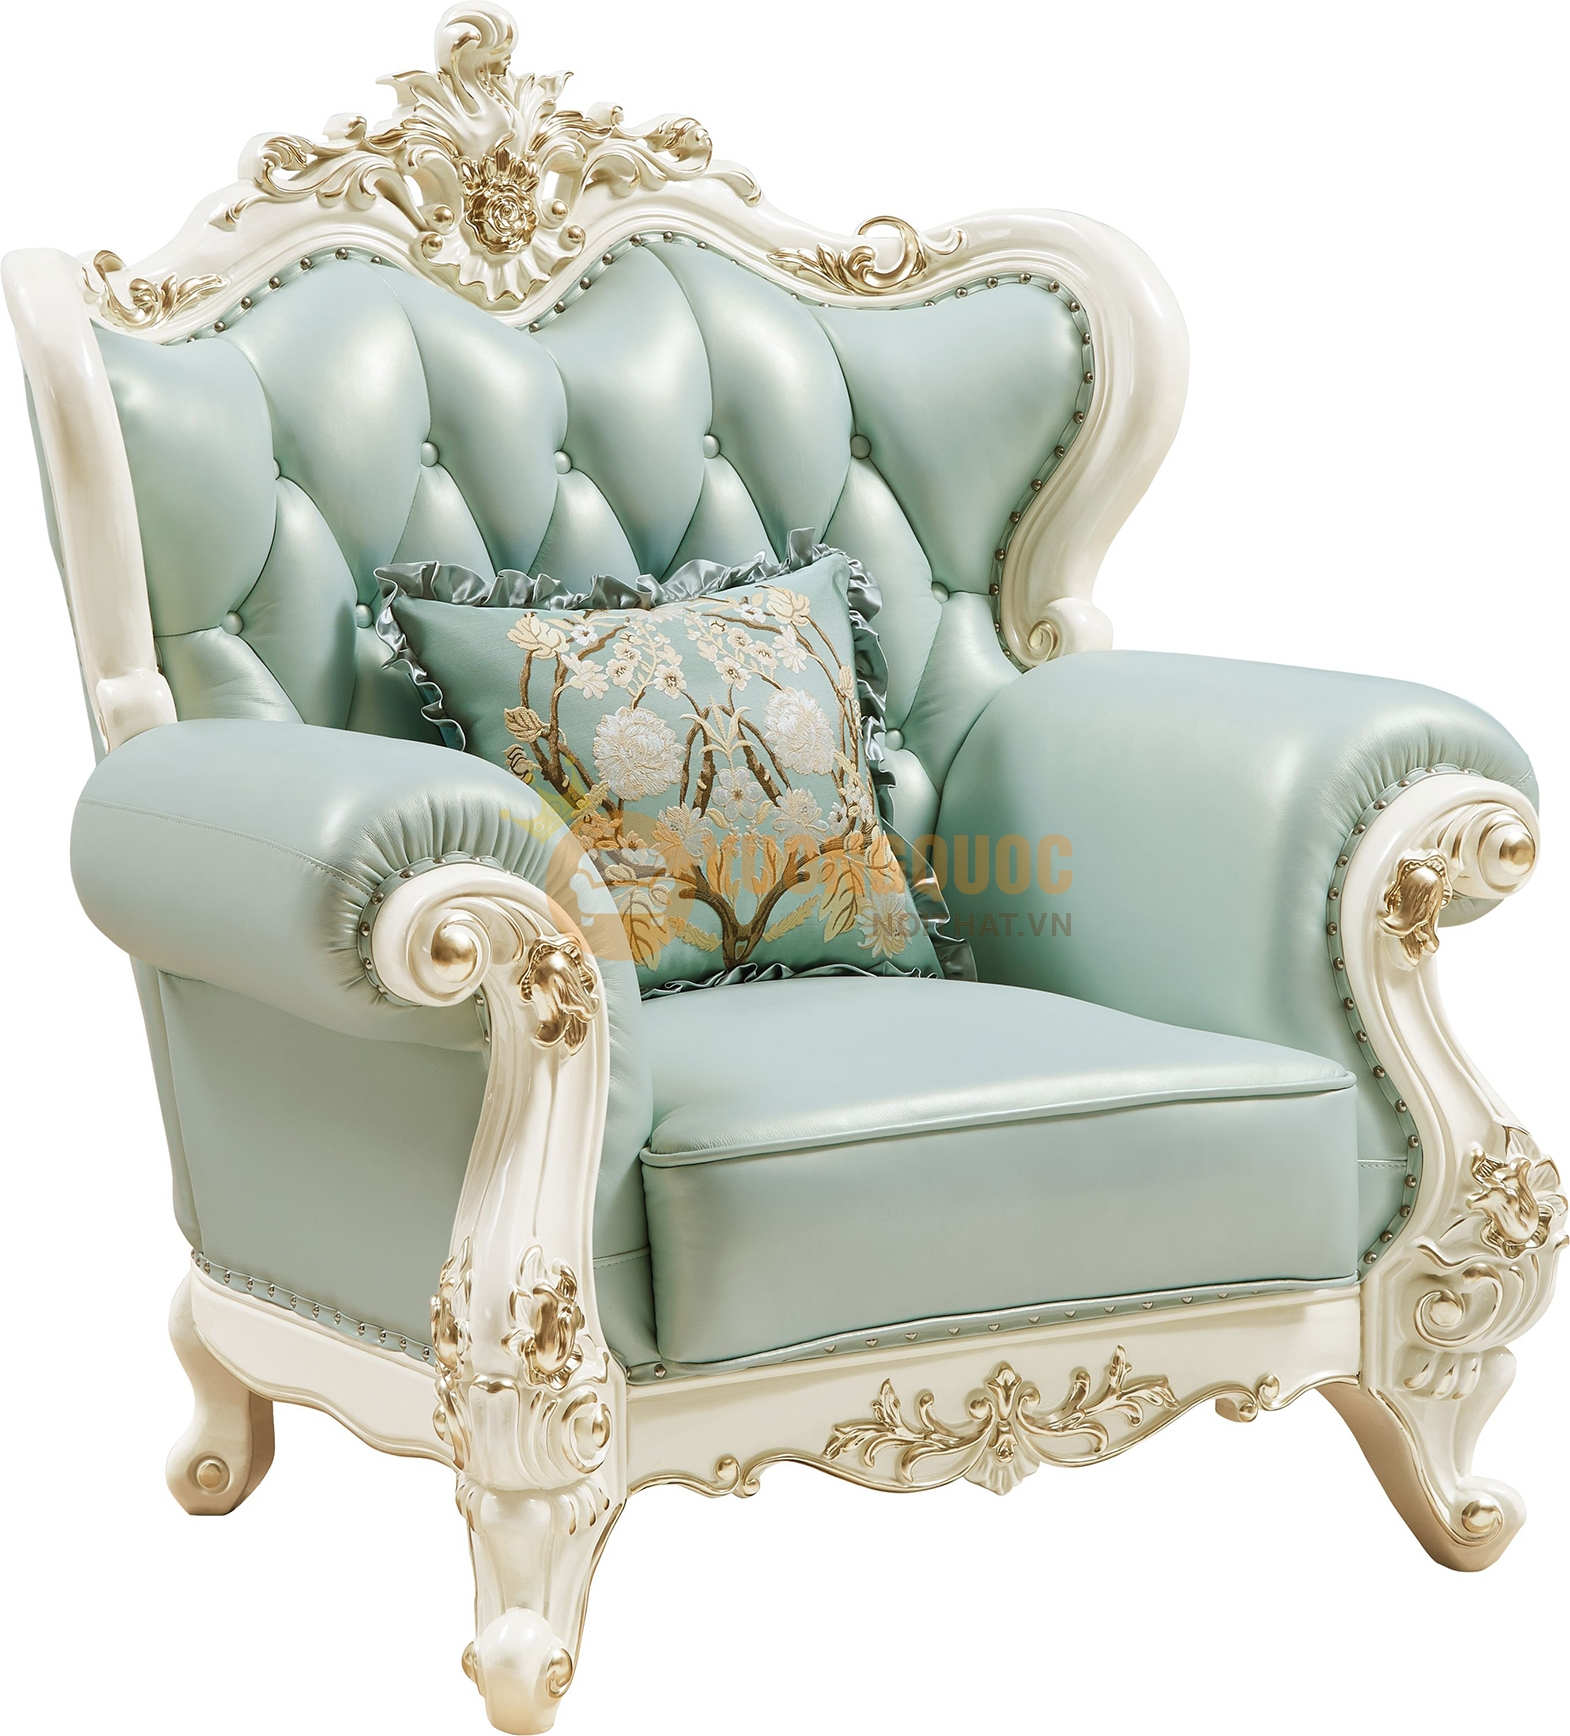 Bộ sofa phòng khách tân cổ điển màu xanh ngọc FLDA15 sofa đơn